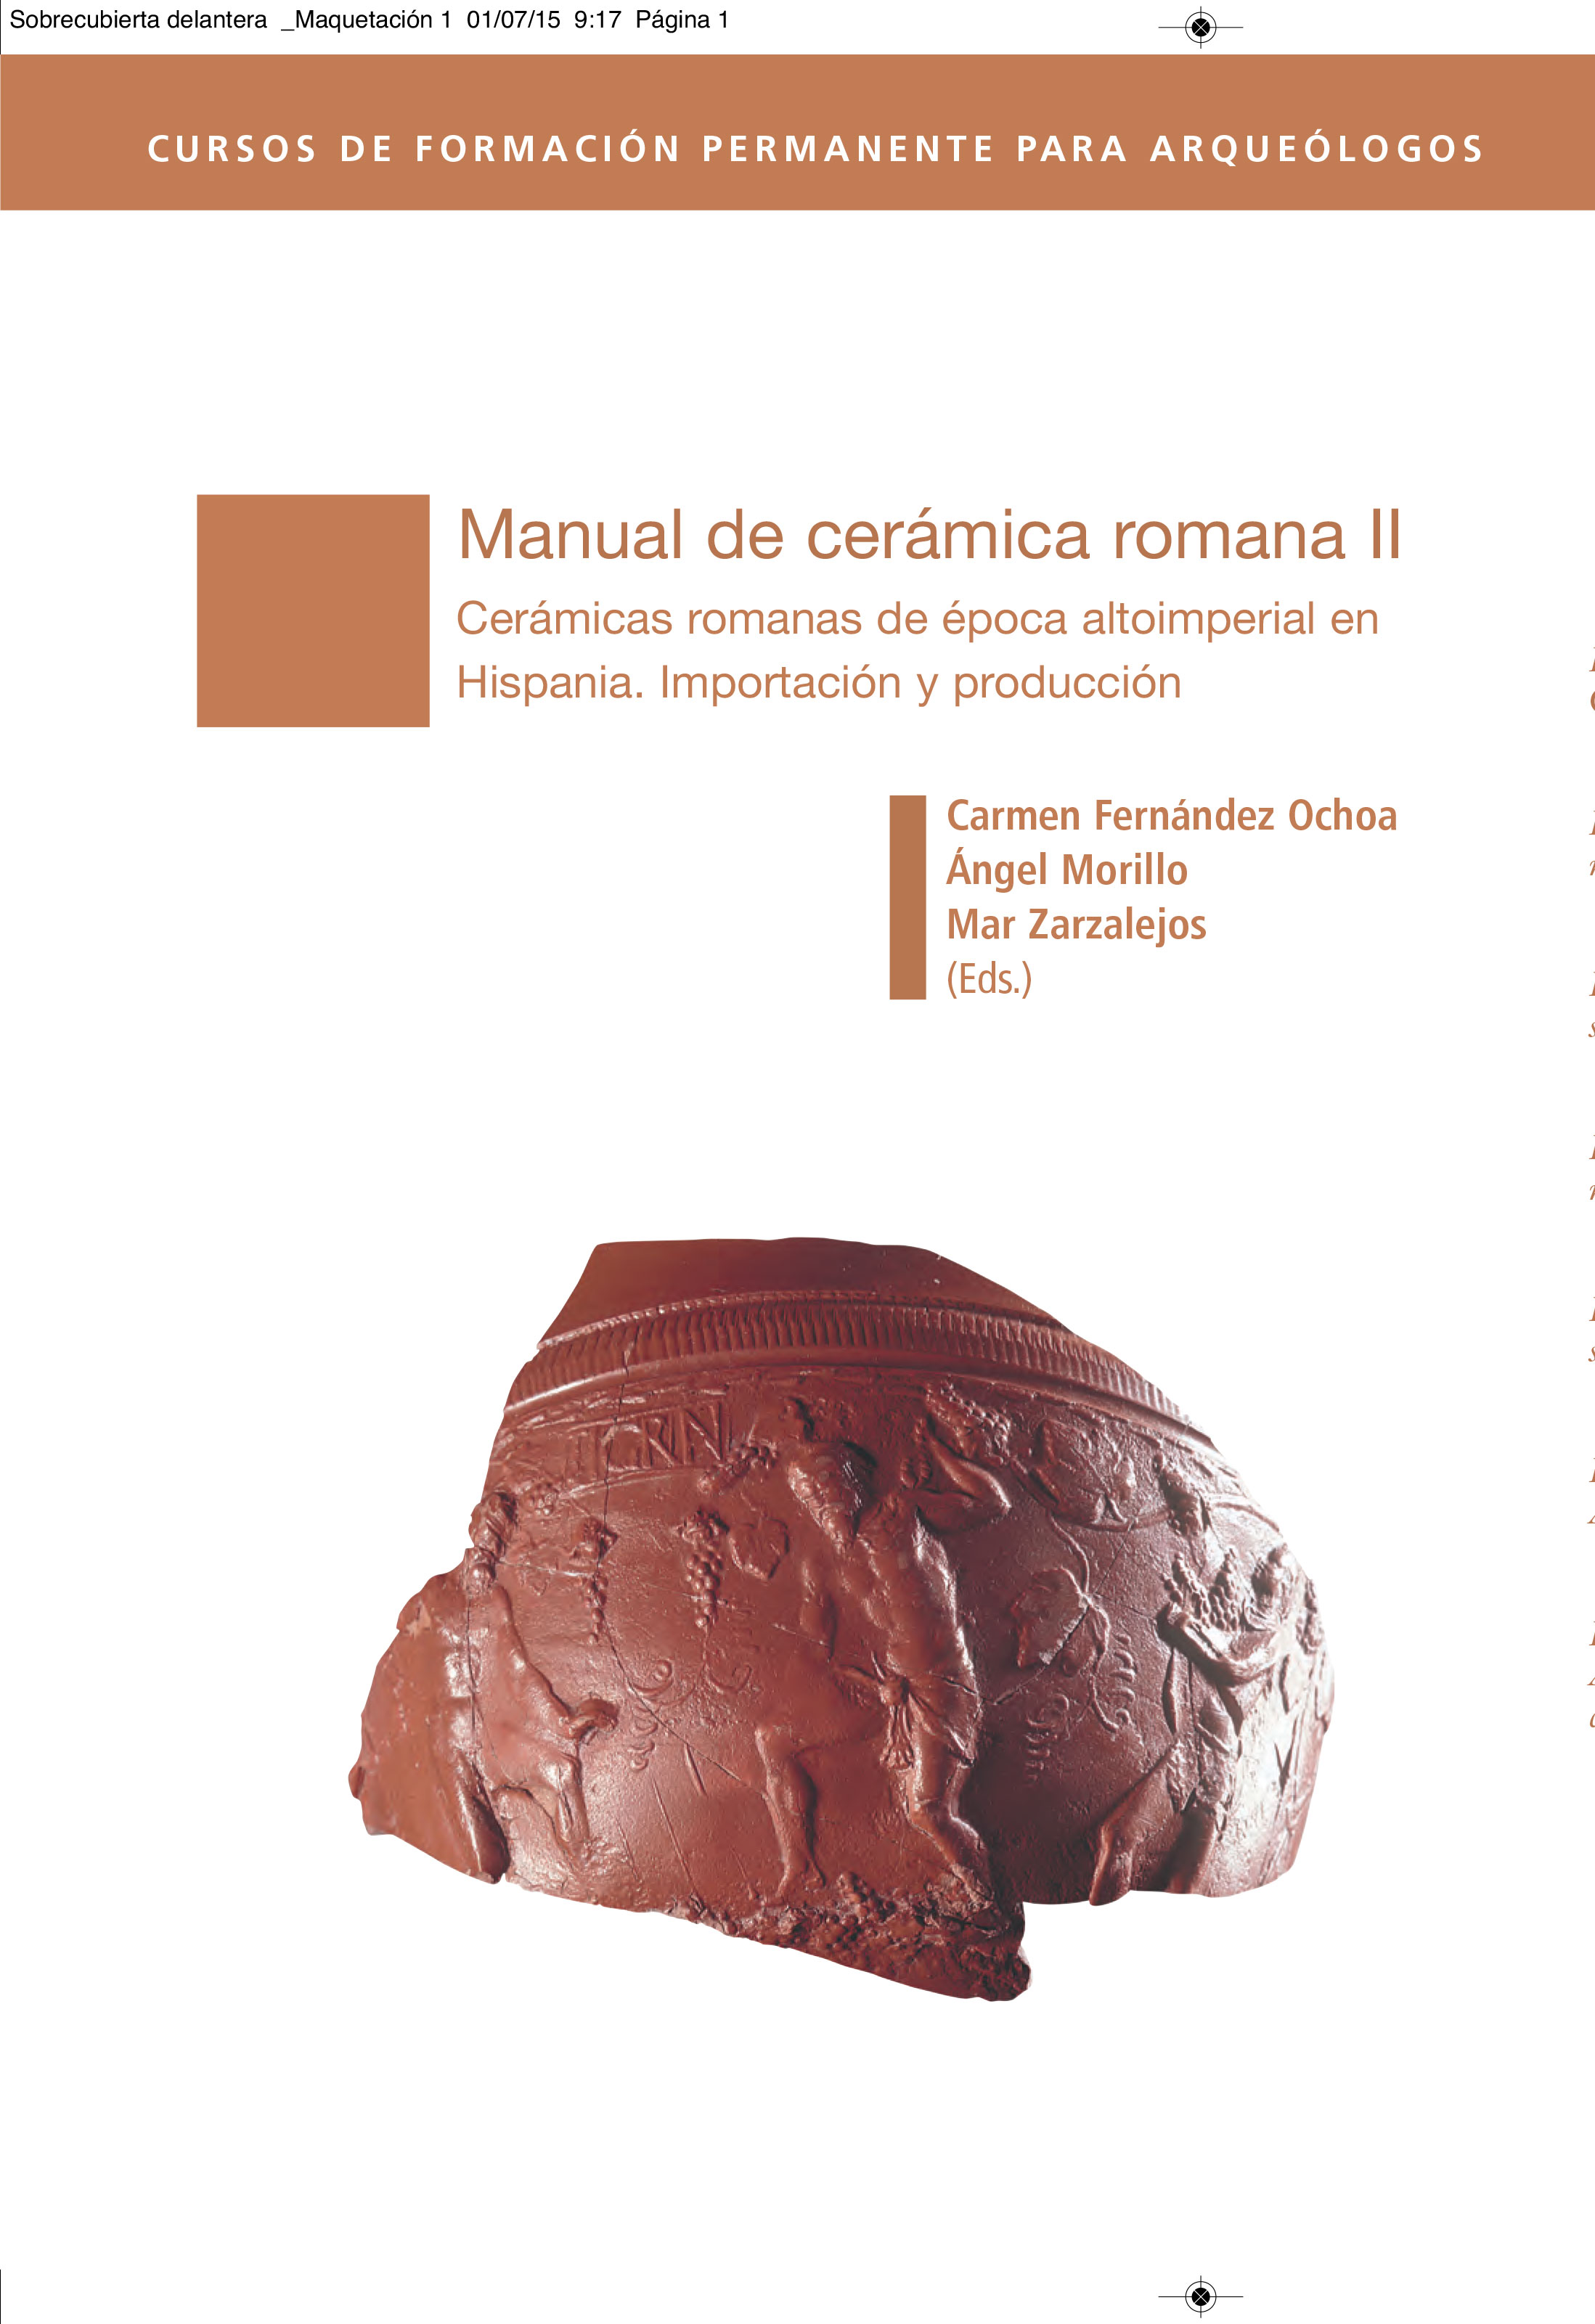 Manual de cerámica romana II. Cerámicas romanas de época altoimperial en Hispania. Importación y producción